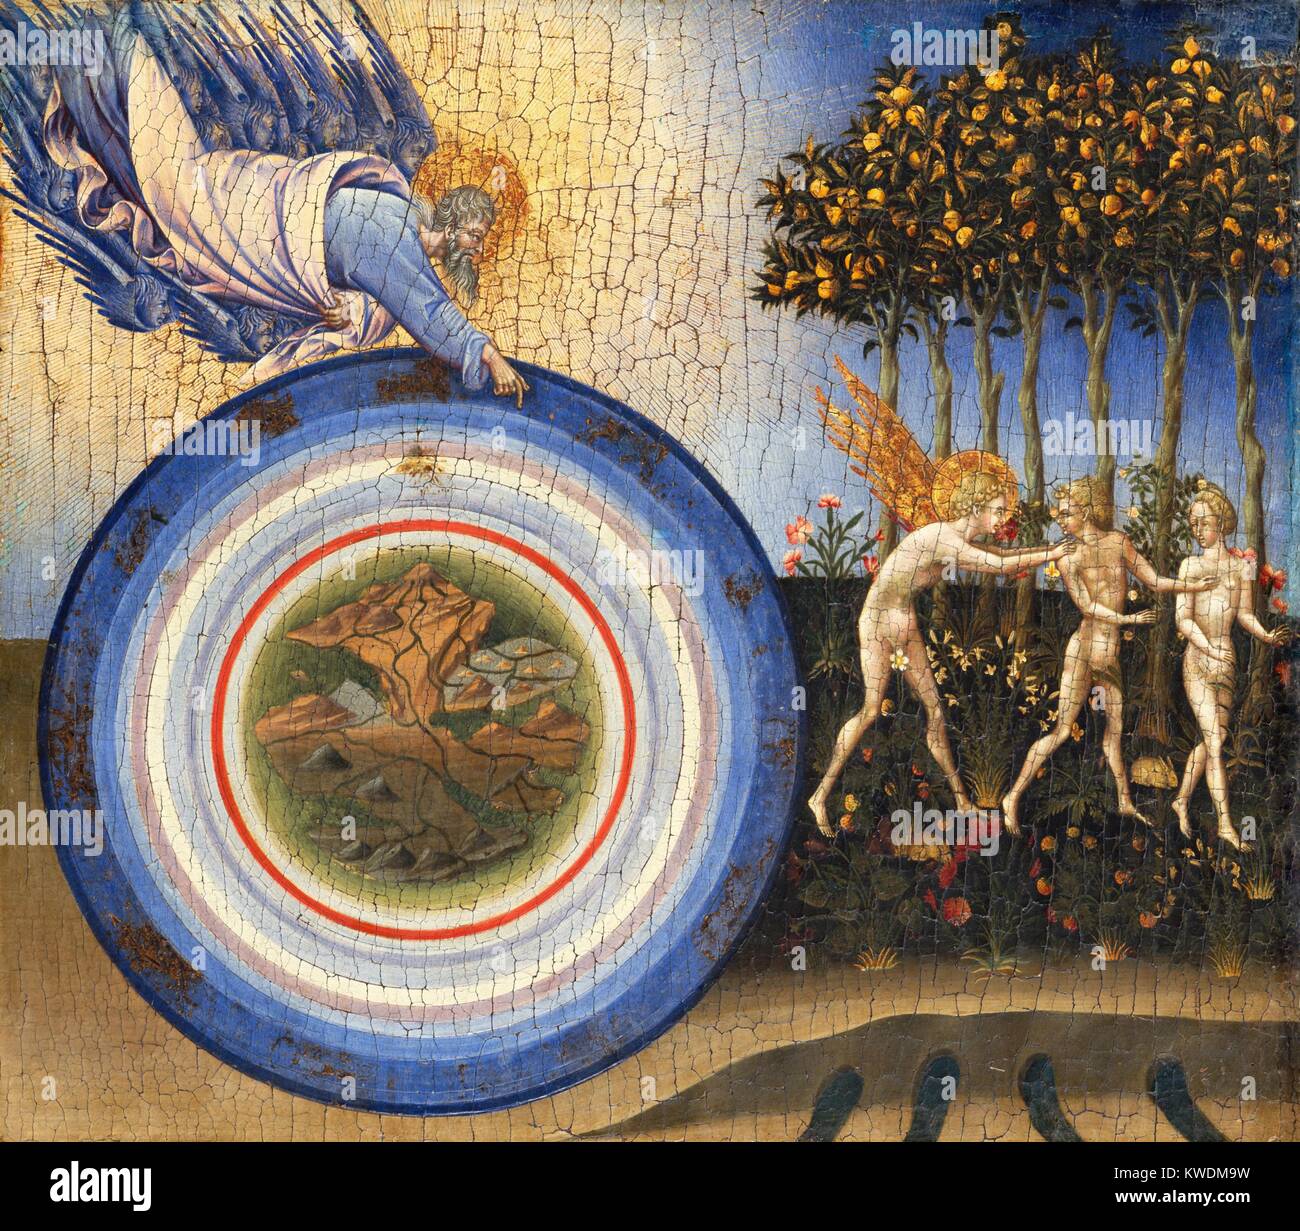 Création DU MONDE ET DE L'EXPULSION DU PARADIS, de Giovanni di Paolo, 1445, la peinture de la Renaissance. L'univers est représenté par des cercles concentriques, avec la terre au centre entouré d'orbites des sphères célestes, y compris sun, puis les constellations du zodiaque. Dieu le Père, soutenu par blue chérubins, flotte au-dessus de l'univers. Le droit est l'expulsion d'Adam et Eve d'Eden (BSLOC   2017 16 58) Banque D'Images